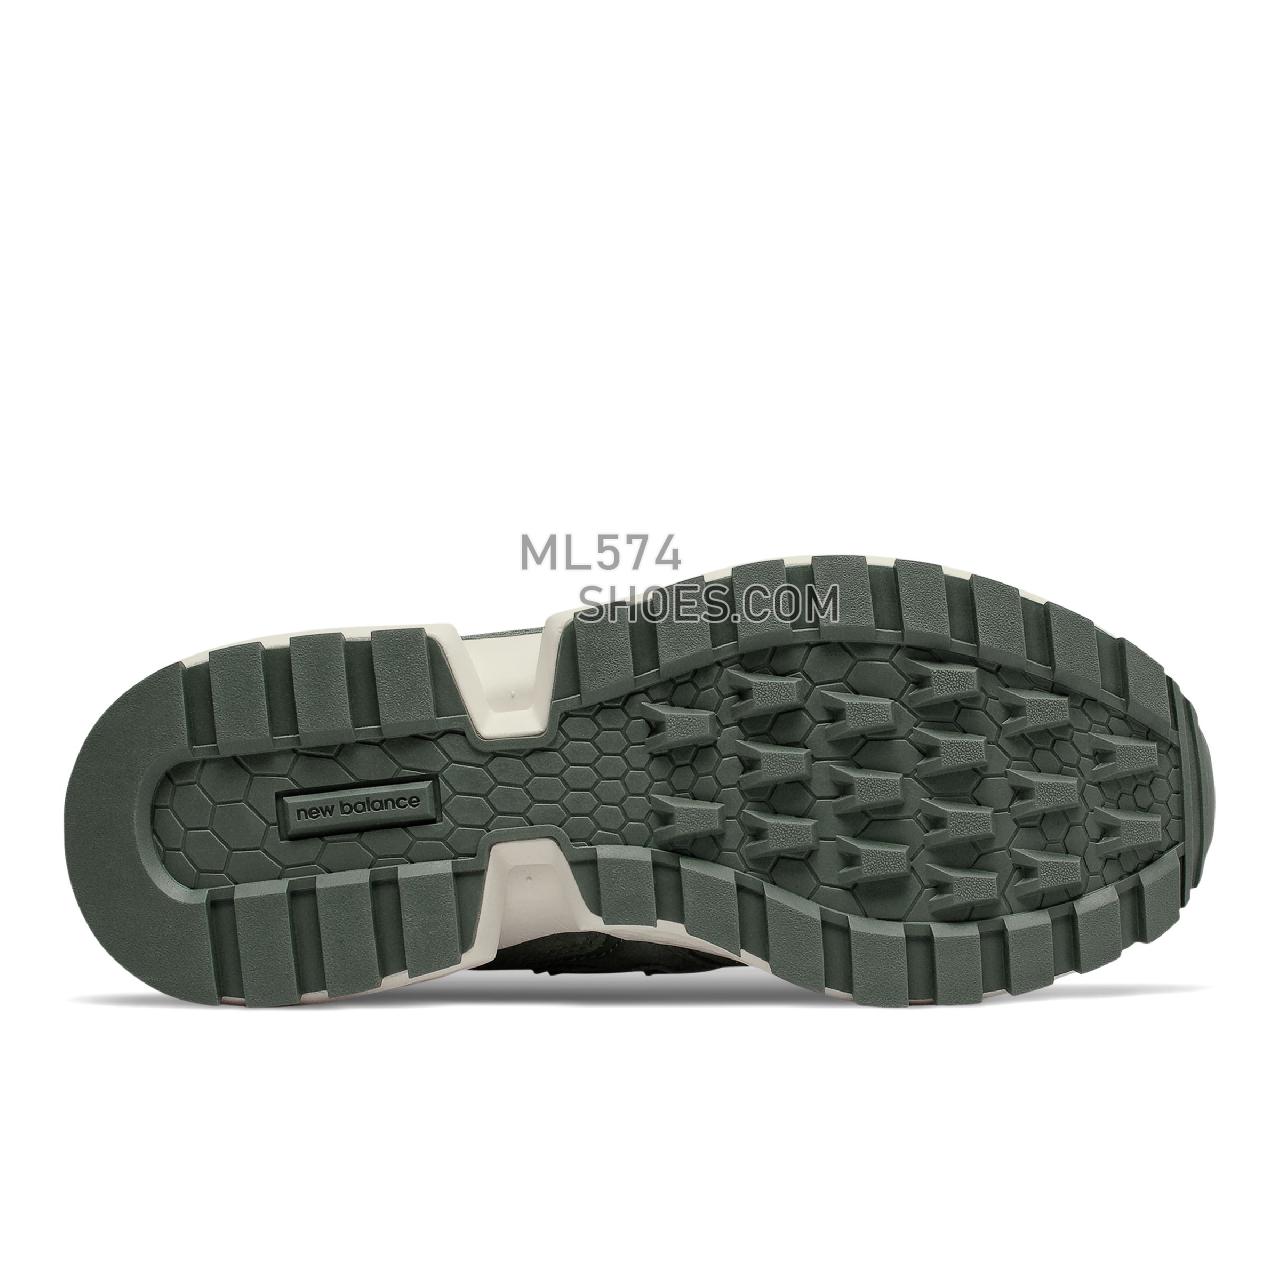 New Balance Fresh Foam 574 Sport - Women's Sport Style Sneakers - Slate Green with Sea Salt - WS574ATF